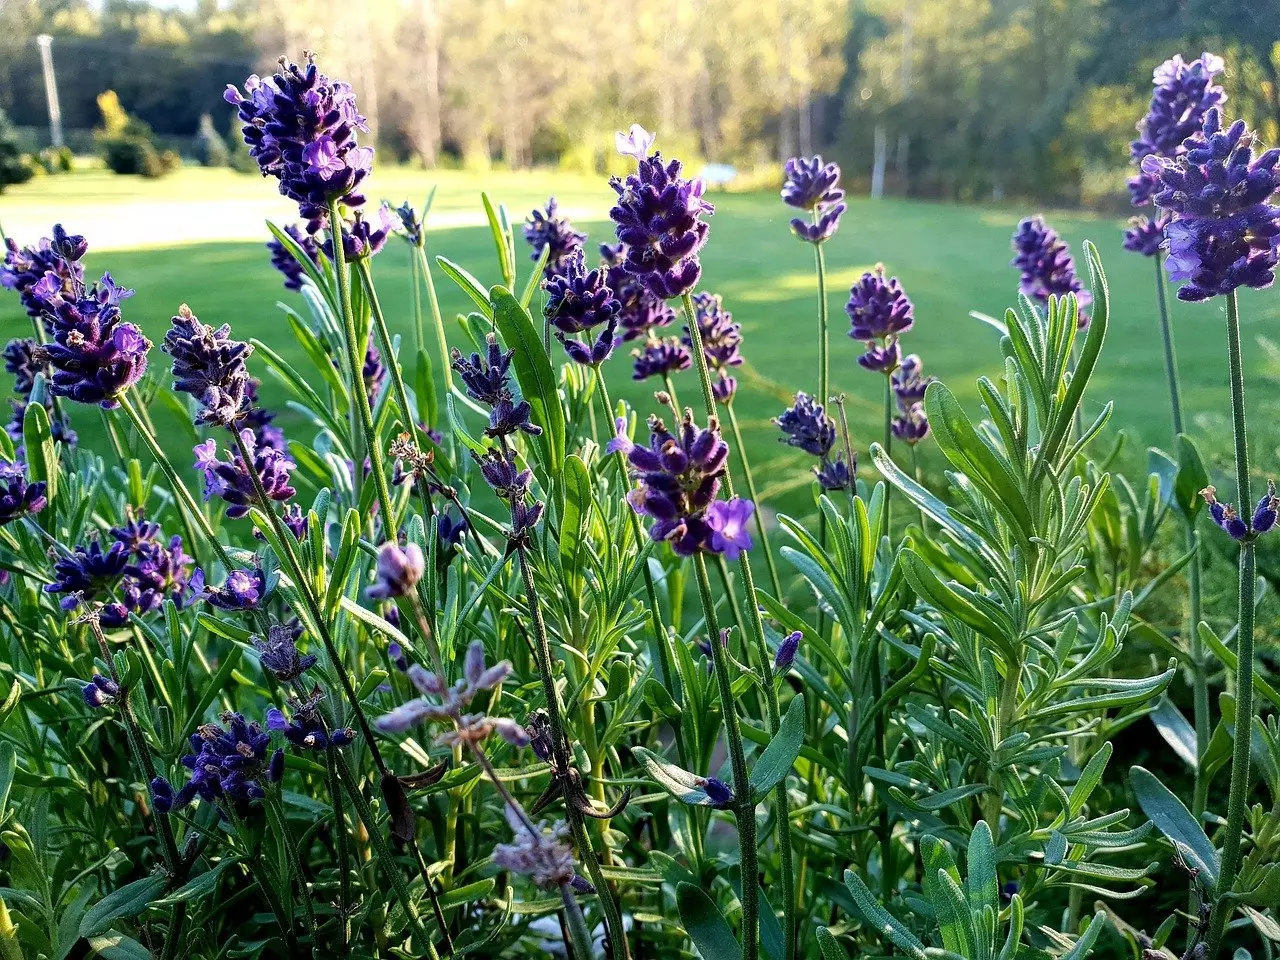 Lavender Plants in a field